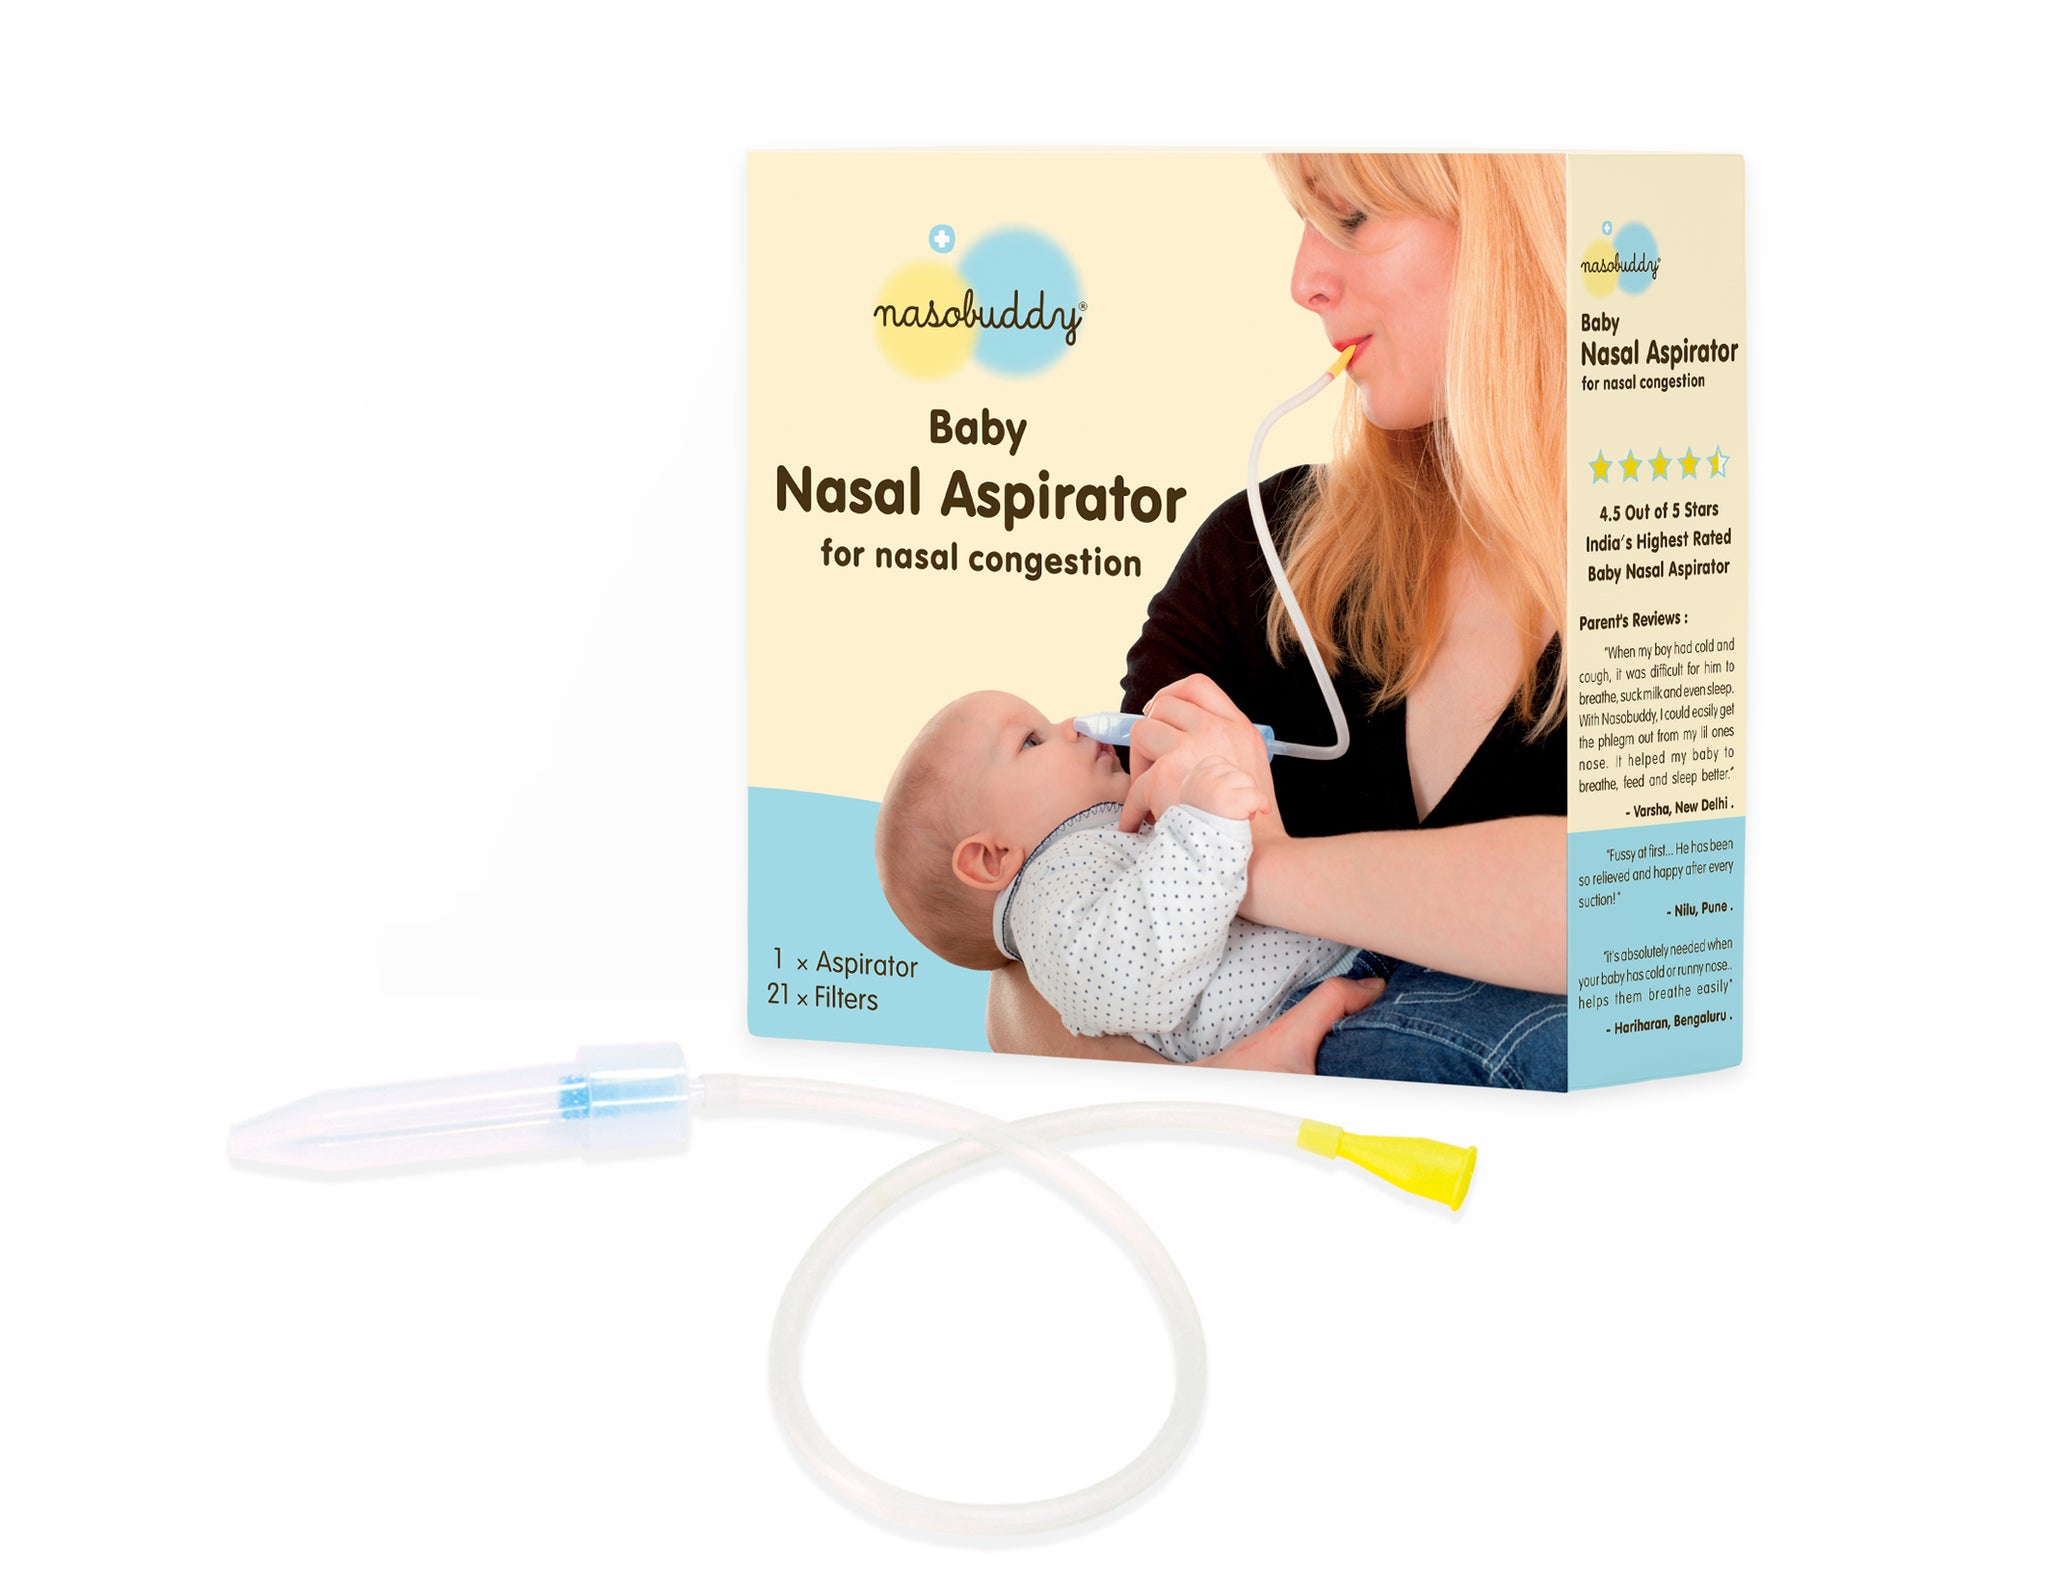 Nasobuddy® - Best Baby Nasal Aspirator